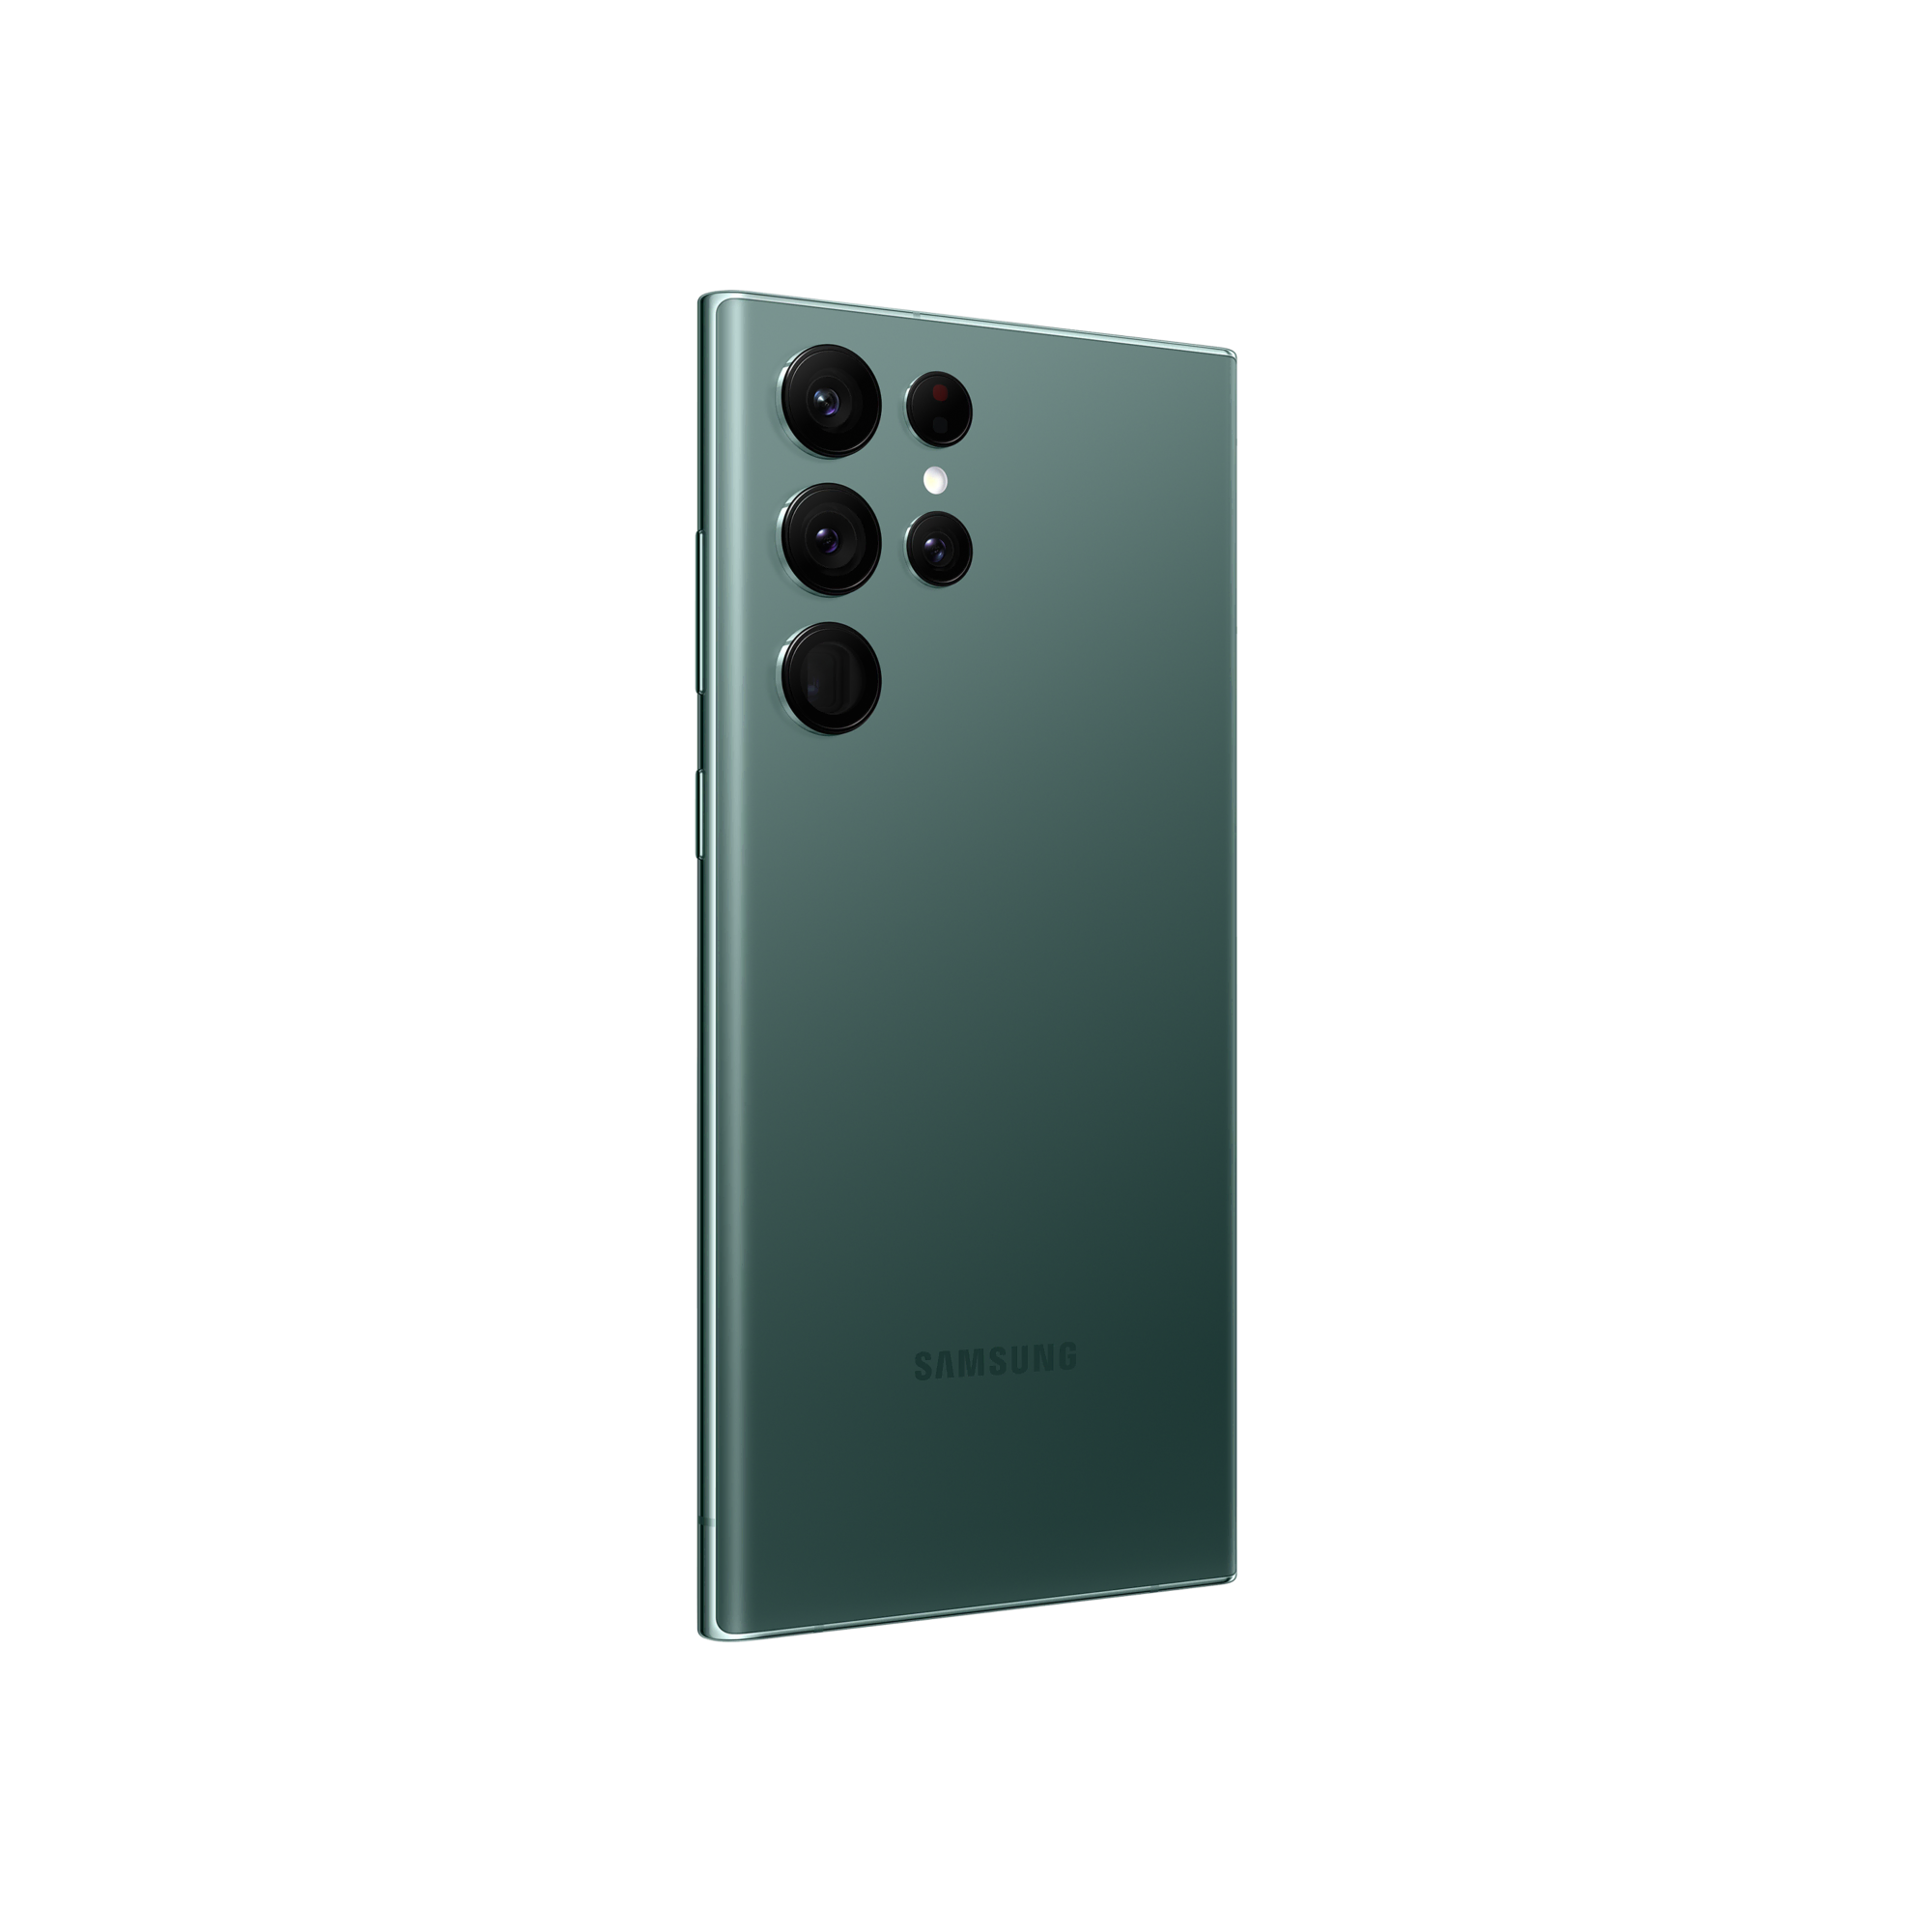 SAMSUNG Galaxy S22 Ultra 256GB Yeşil Android Telefon Modelleri